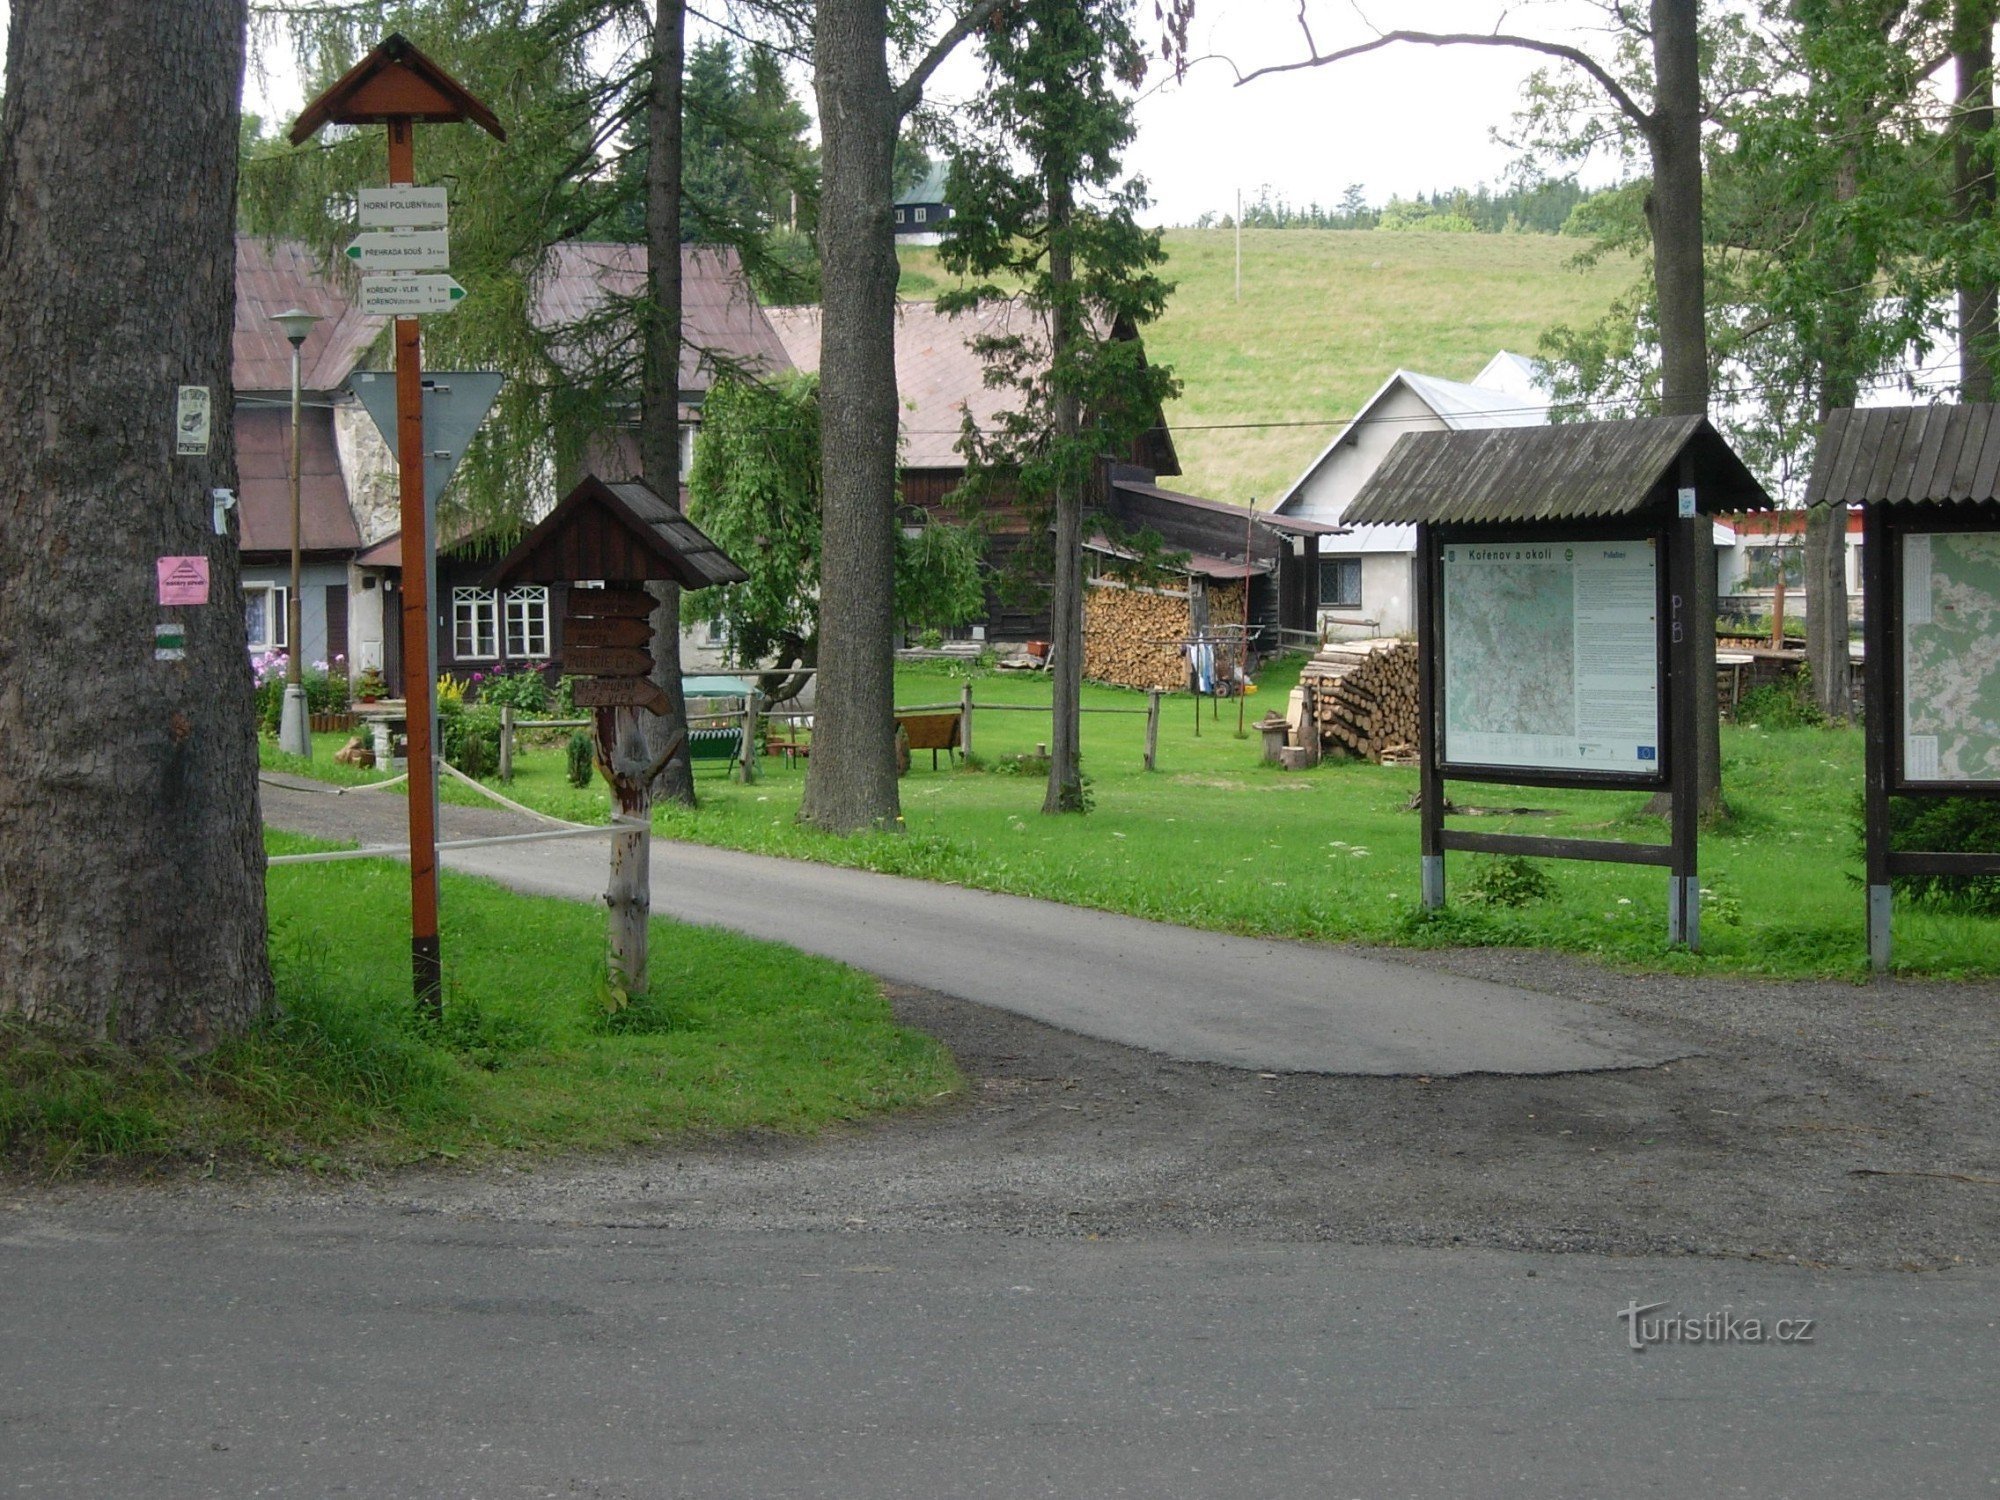 Kažipot v vasi Horní Polubný